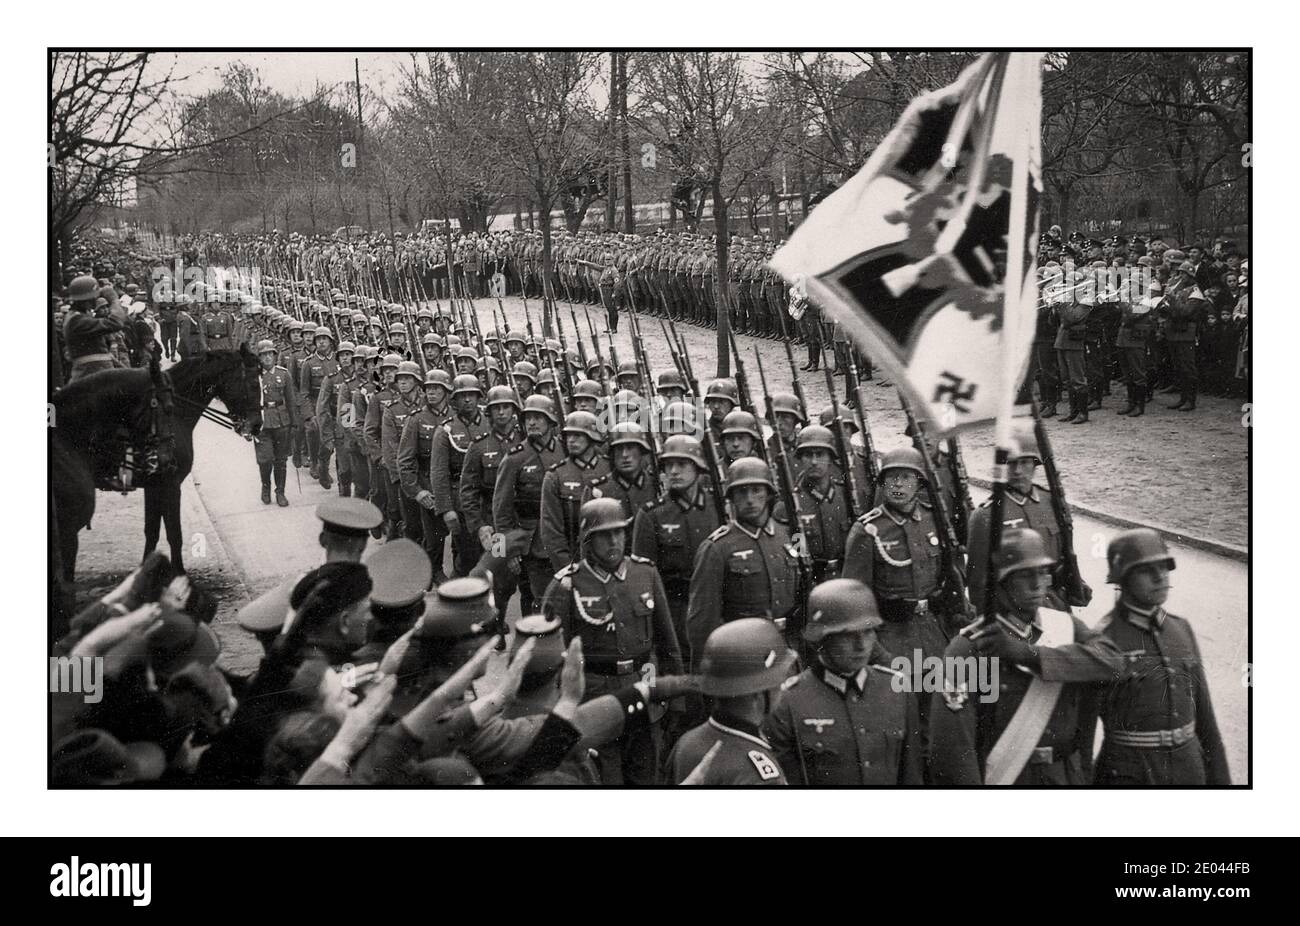 1940 Desfile de la marcha del Ejército de la Wehrmacht Nazi, con bandera estándar regimental al frente. Banda militar tocando detrás. Los espectadores dan a Heil Hitler un saludo en primer plano. Foto de stock